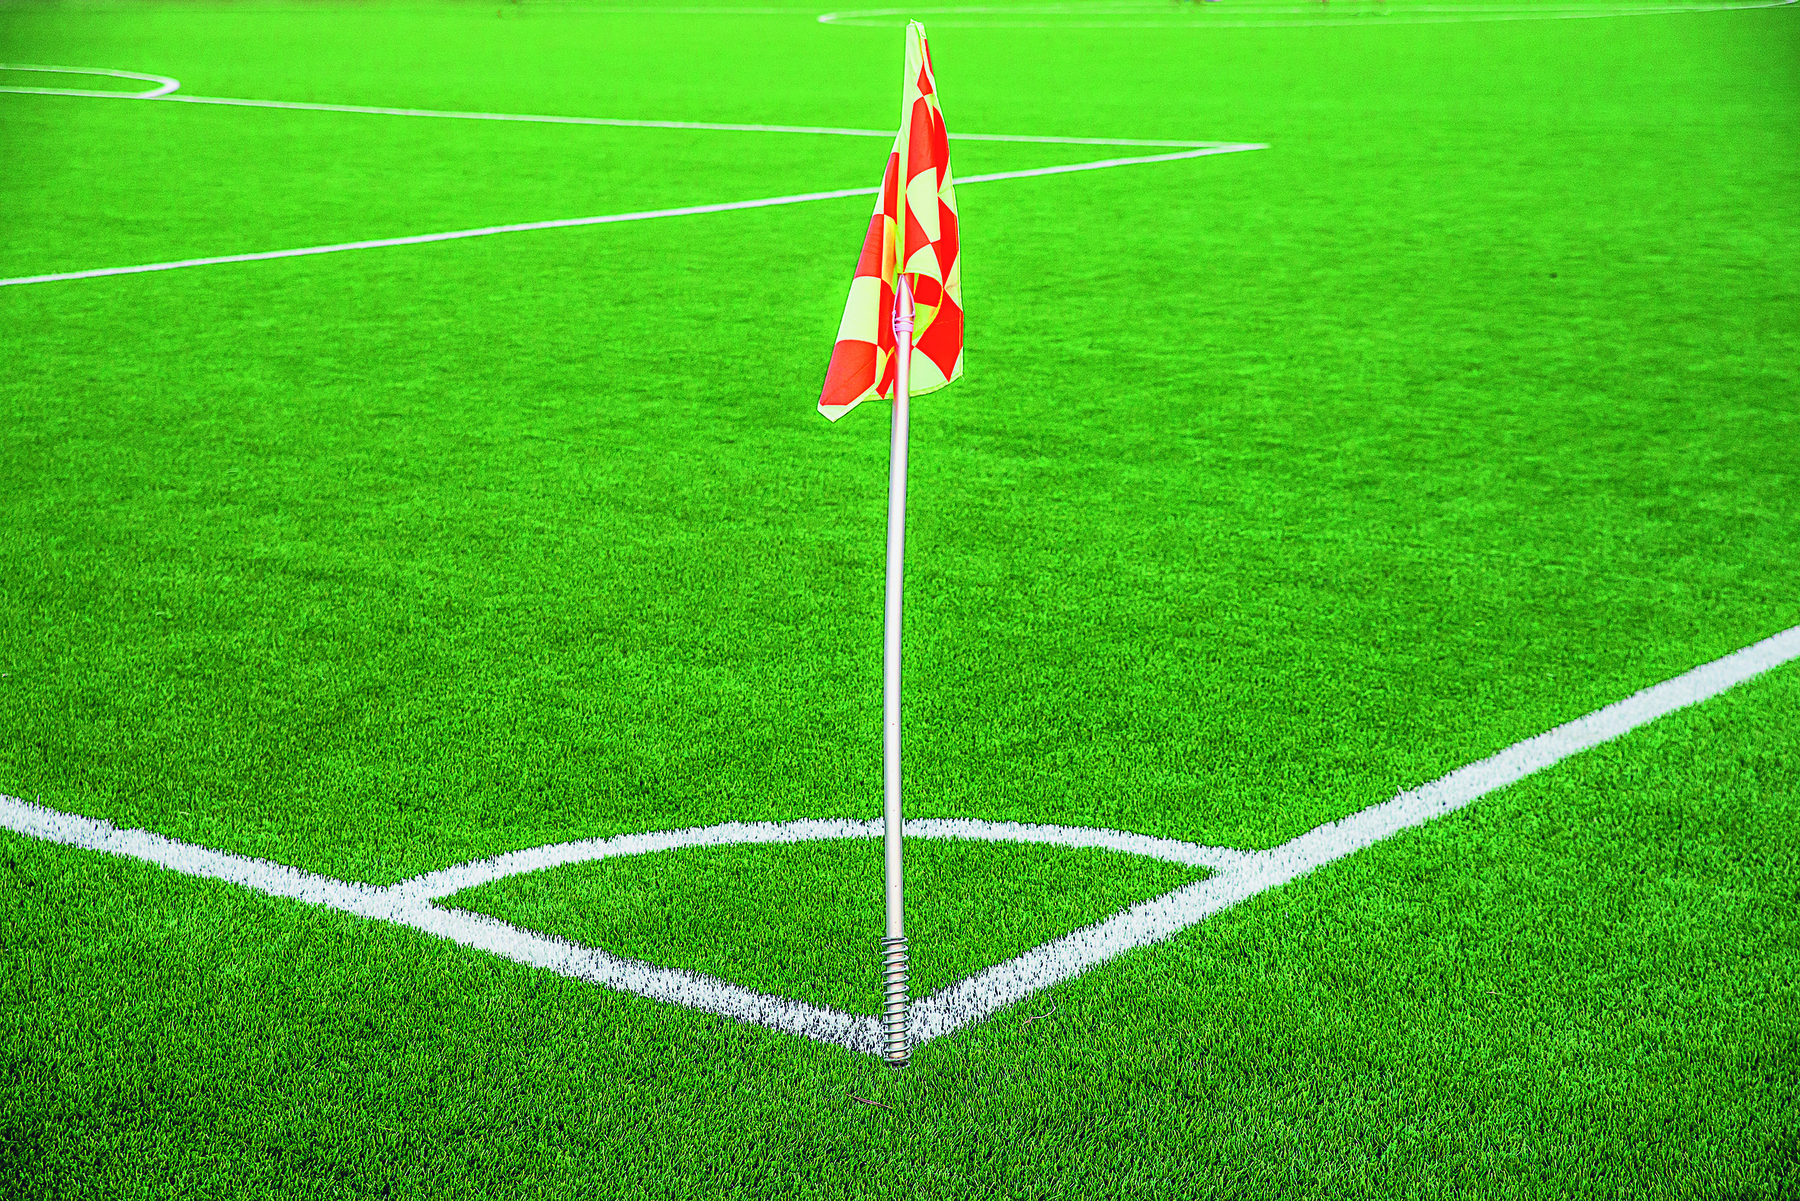 Fotografia. Parte de um campo de futebol, com destaque para um de seus 4 cantos. Na imagem, há uma bandeira  vermelha e branca no encontro da linha lateral com a linha de fundo.